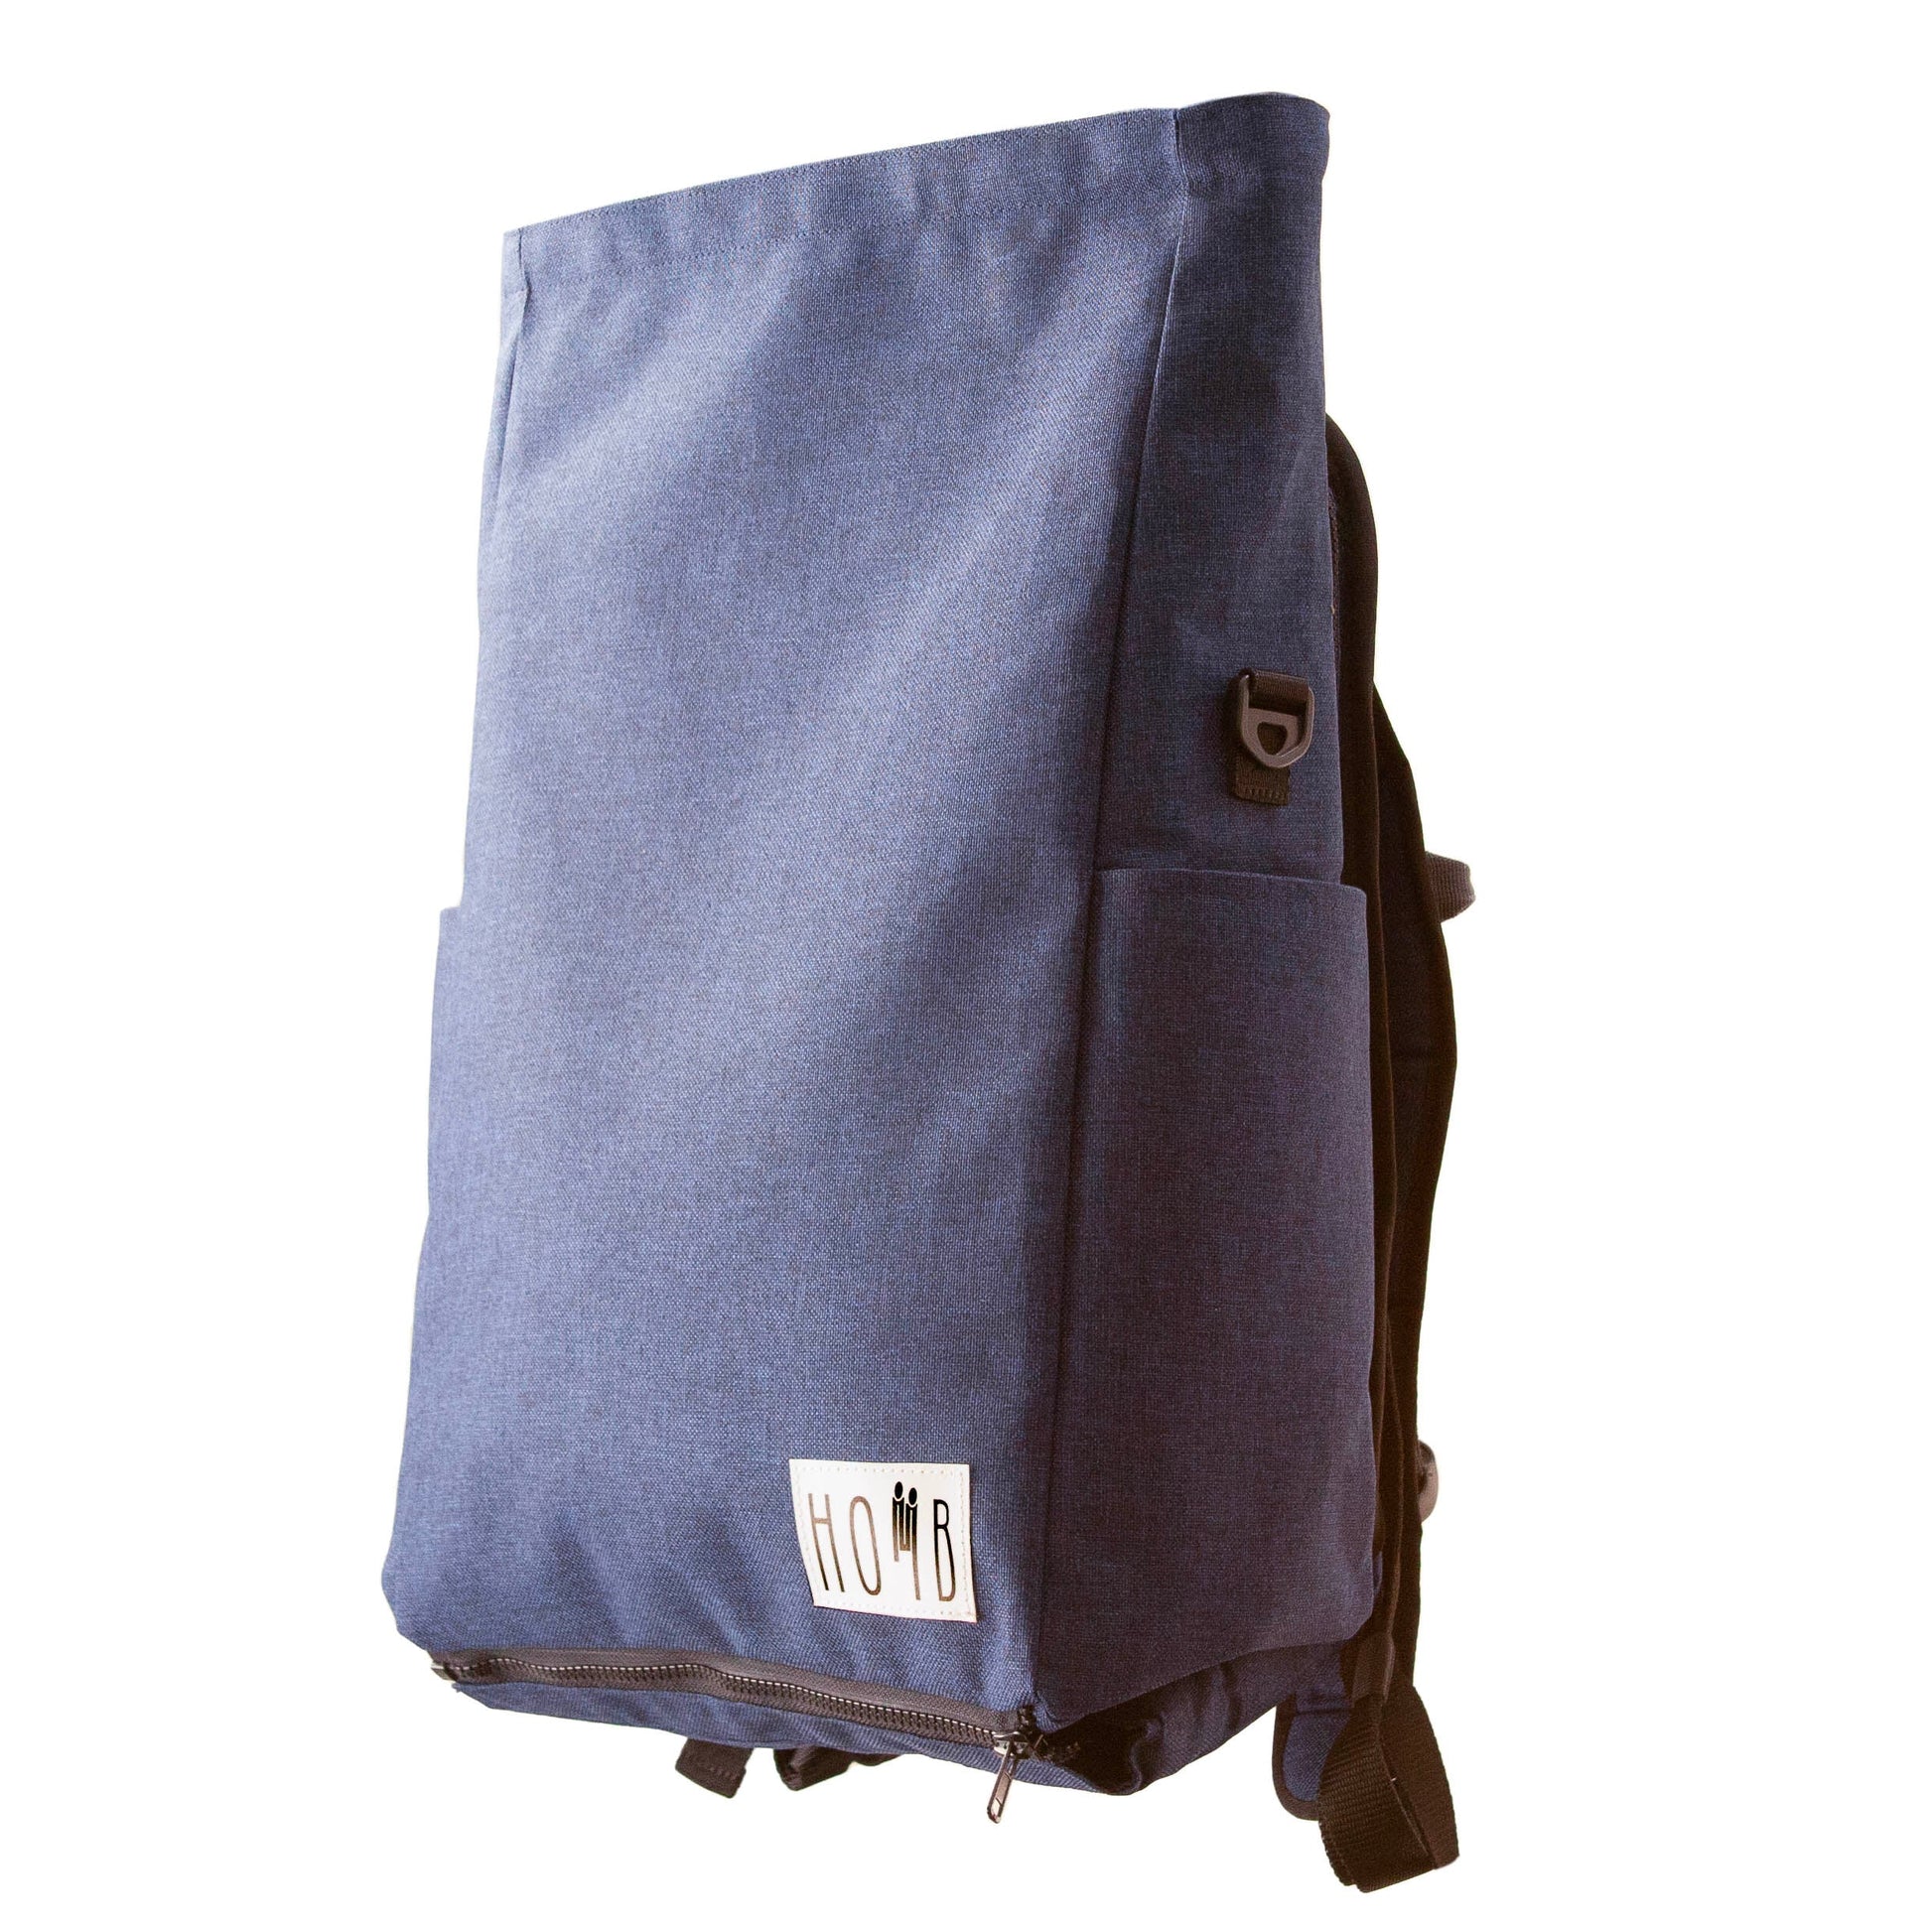 HOMB - Rucksack mit Kindertrage - Rückentrage ab 2 Jahre bis 25 kg-11